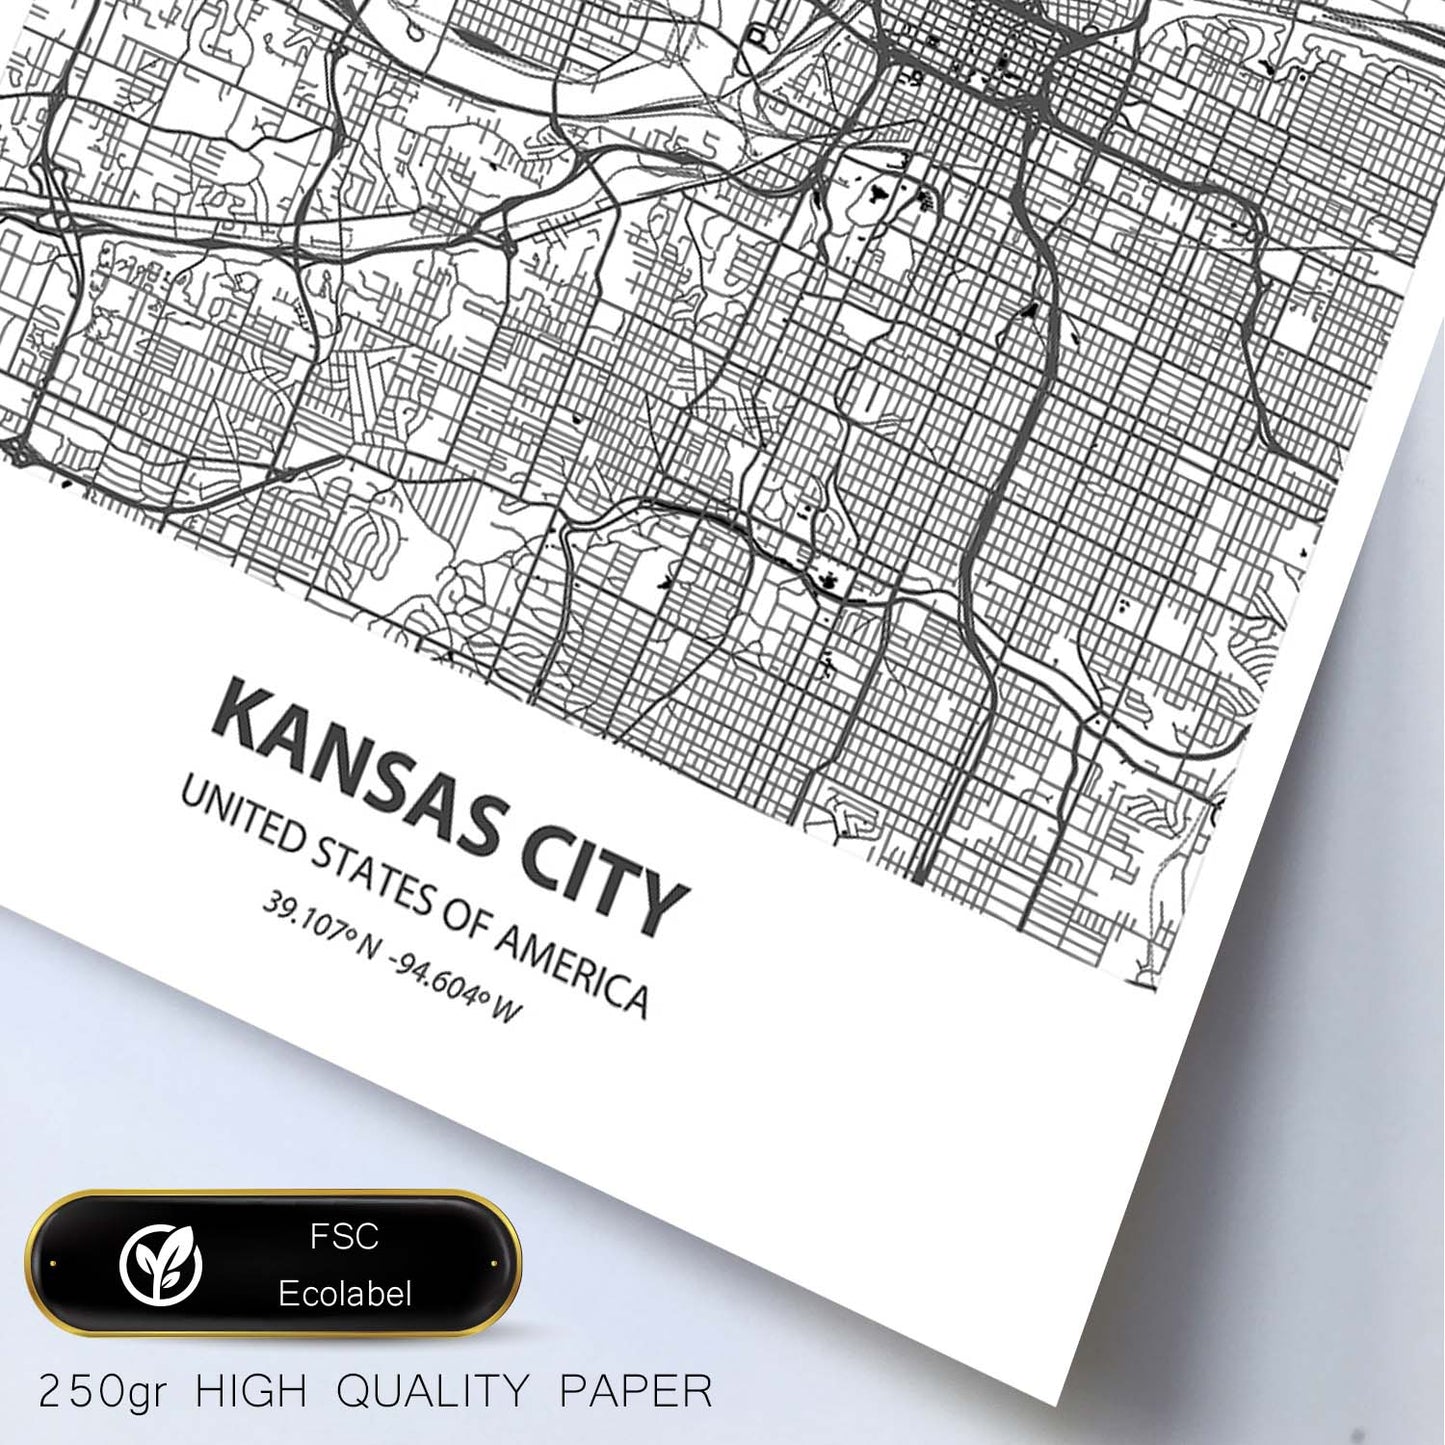 Poster con mapa de Kansas City - USA. Láminas de ciudades de Estados Unidos con mares y ríos en color negro.-Artwork-Nacnic-Nacnic Estudio SL